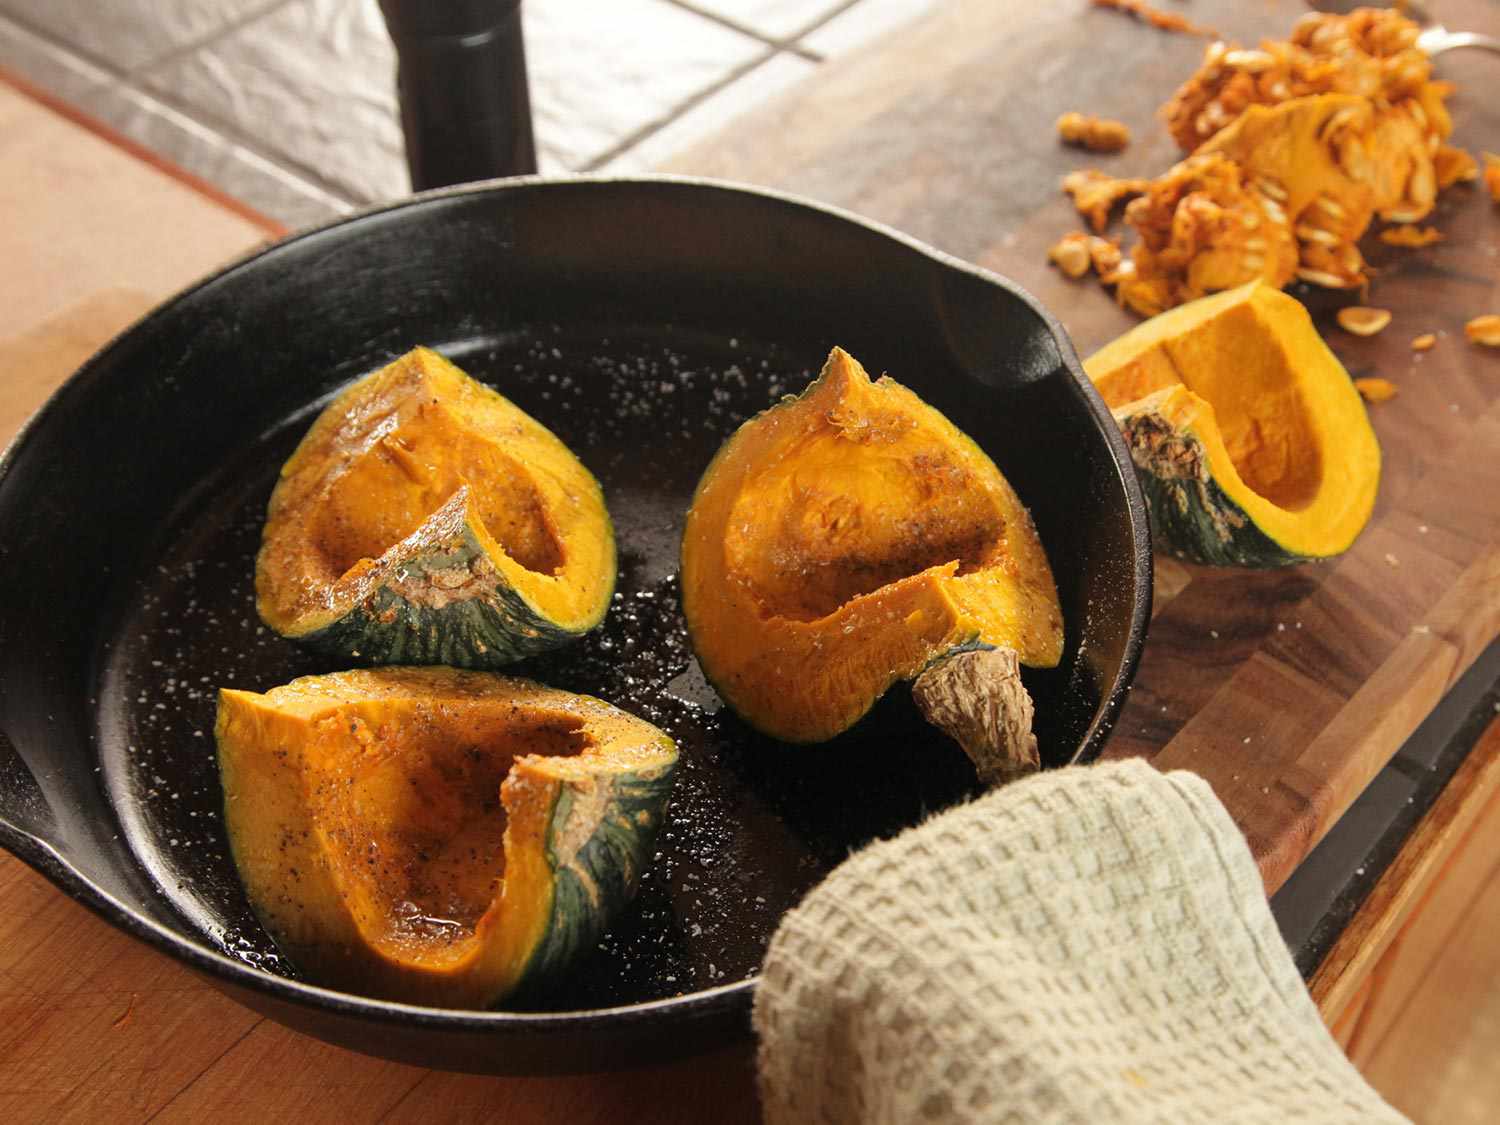 在铸铁煎锅中放入三块调味的、去籽的南瓜，切成四等份，准备烤。(第四节种子被搁置一旁。)